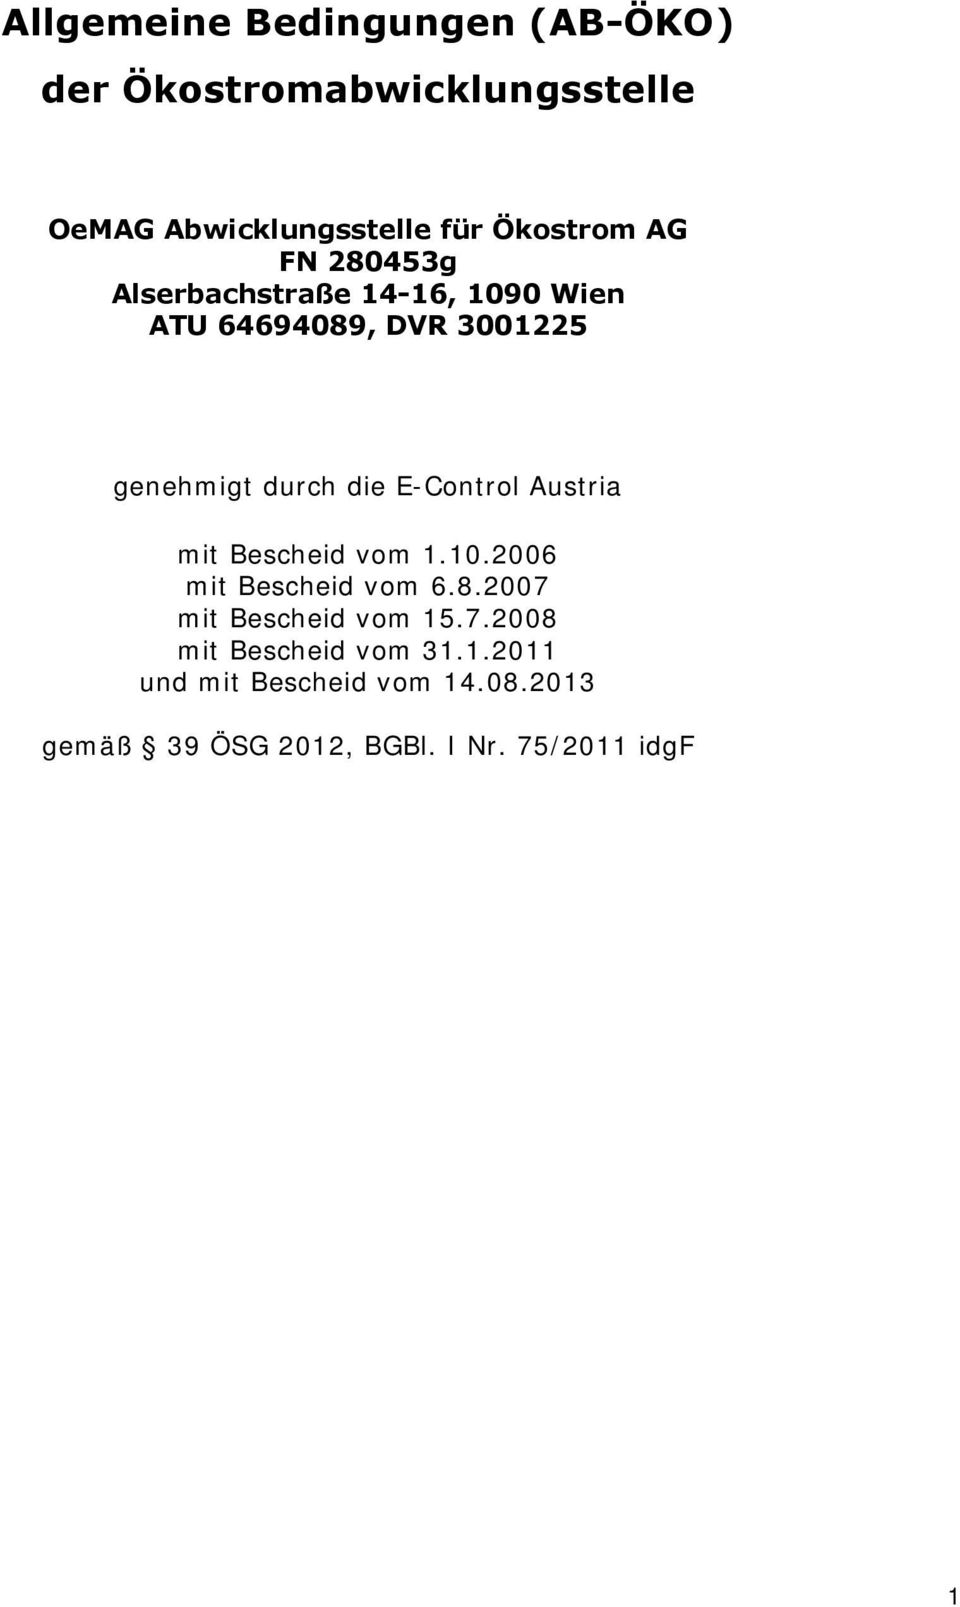 E-Control Austria mit Bescheid vom 1.10.2006 mit Bescheid vom 6.8.2007 mit Bescheid vom 15.7.2008 mit Bescheid vom 31.